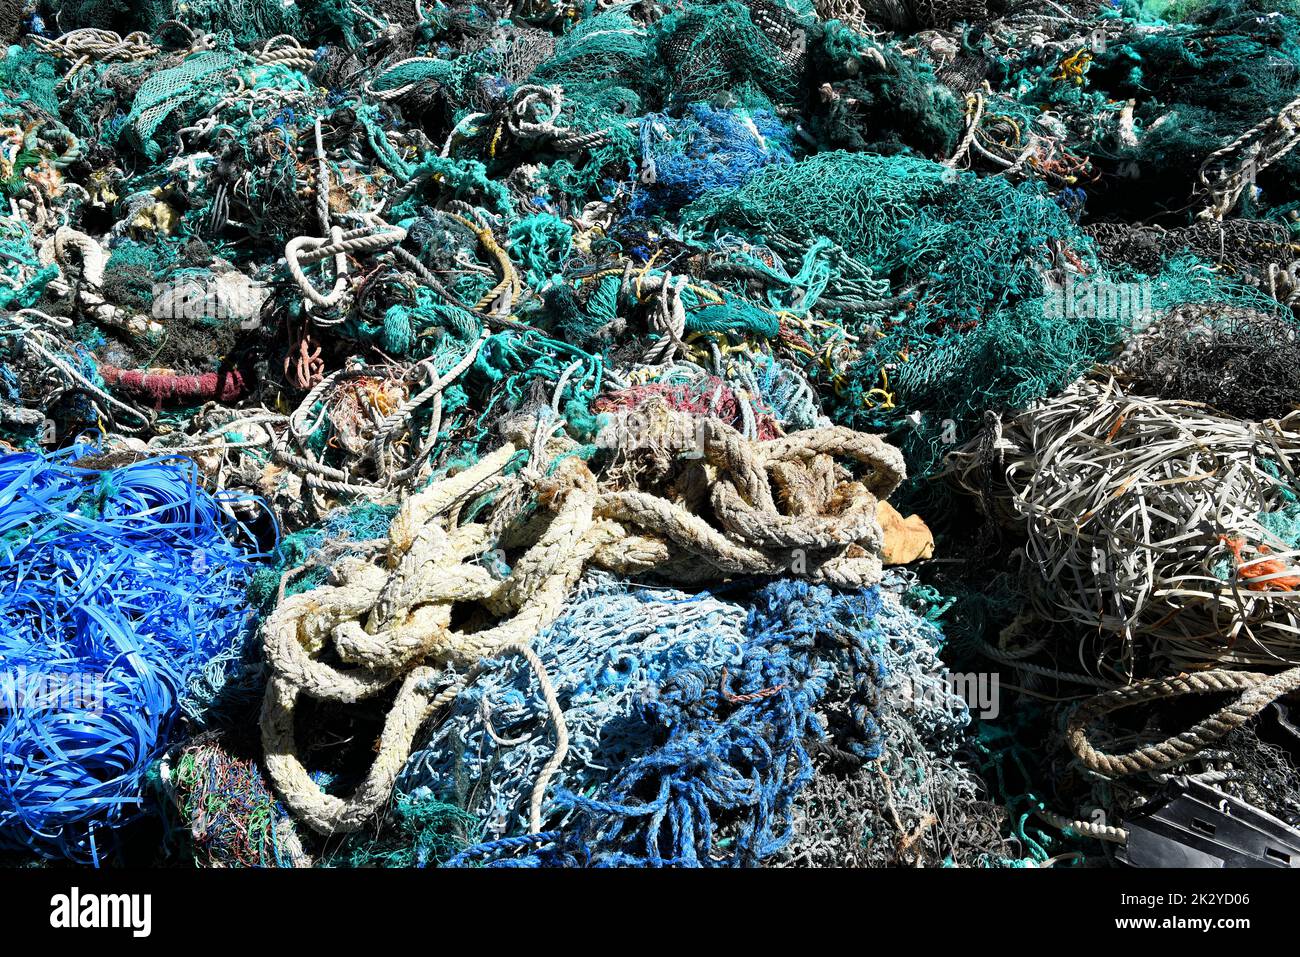 Ein großer Haufen von Schleppernetzen, Seilen und Schutt, der aus dem Hafen von Los Angeles ausgebaggert wurde. Fischernetze sind eine der Hauptquellen der Meeresverschmutzung. Stockfoto